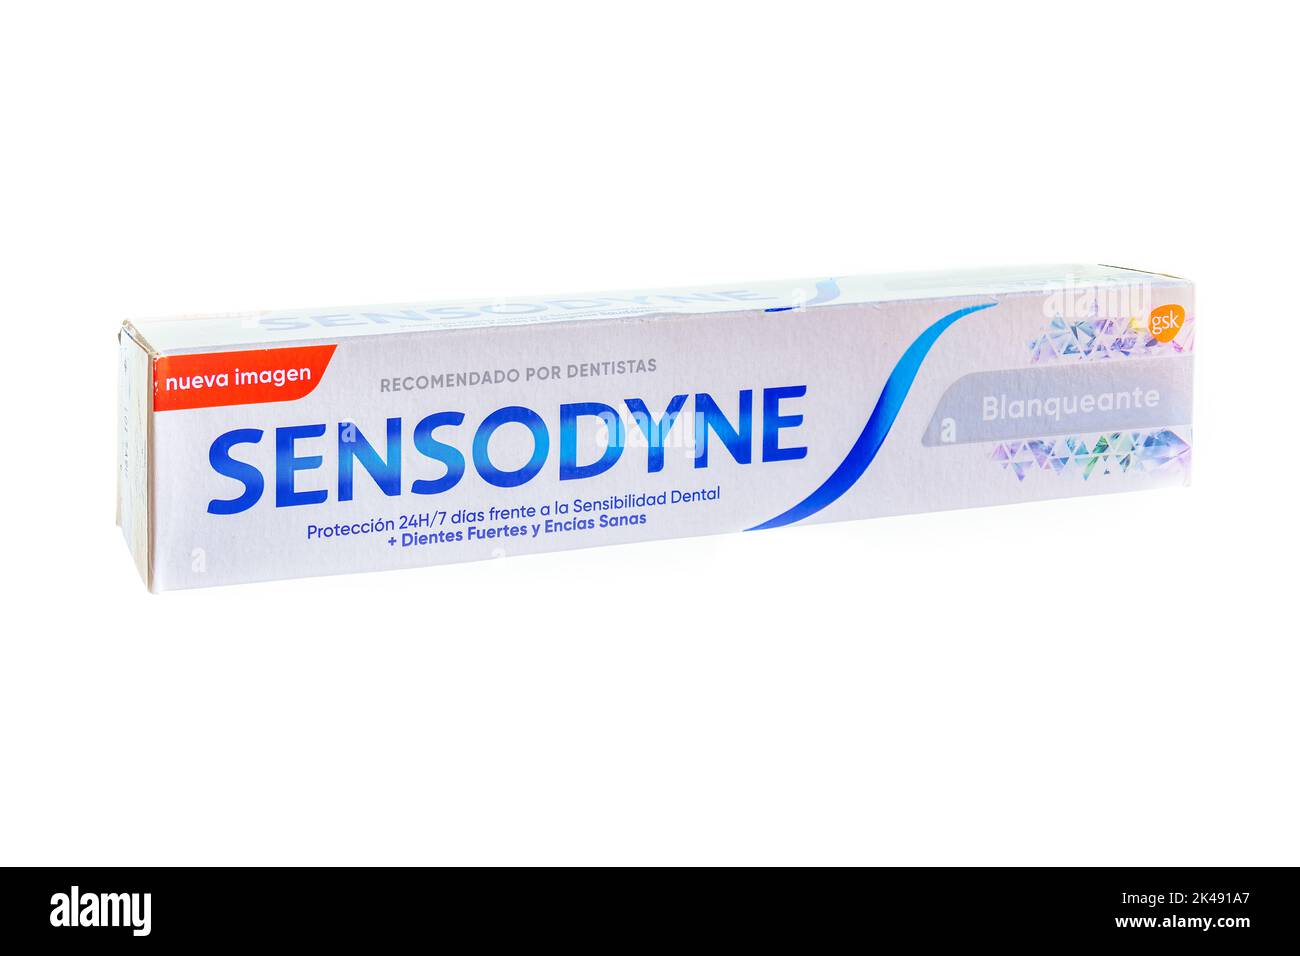 Huelva, Espagne - 1 octobre 2022: Dentifrice blanchissant Sensodyne, Sensodyne est une marque de dentifrice et de brosse à dents spécialisée dans l'hypersitiv dentaire Banque D'Images